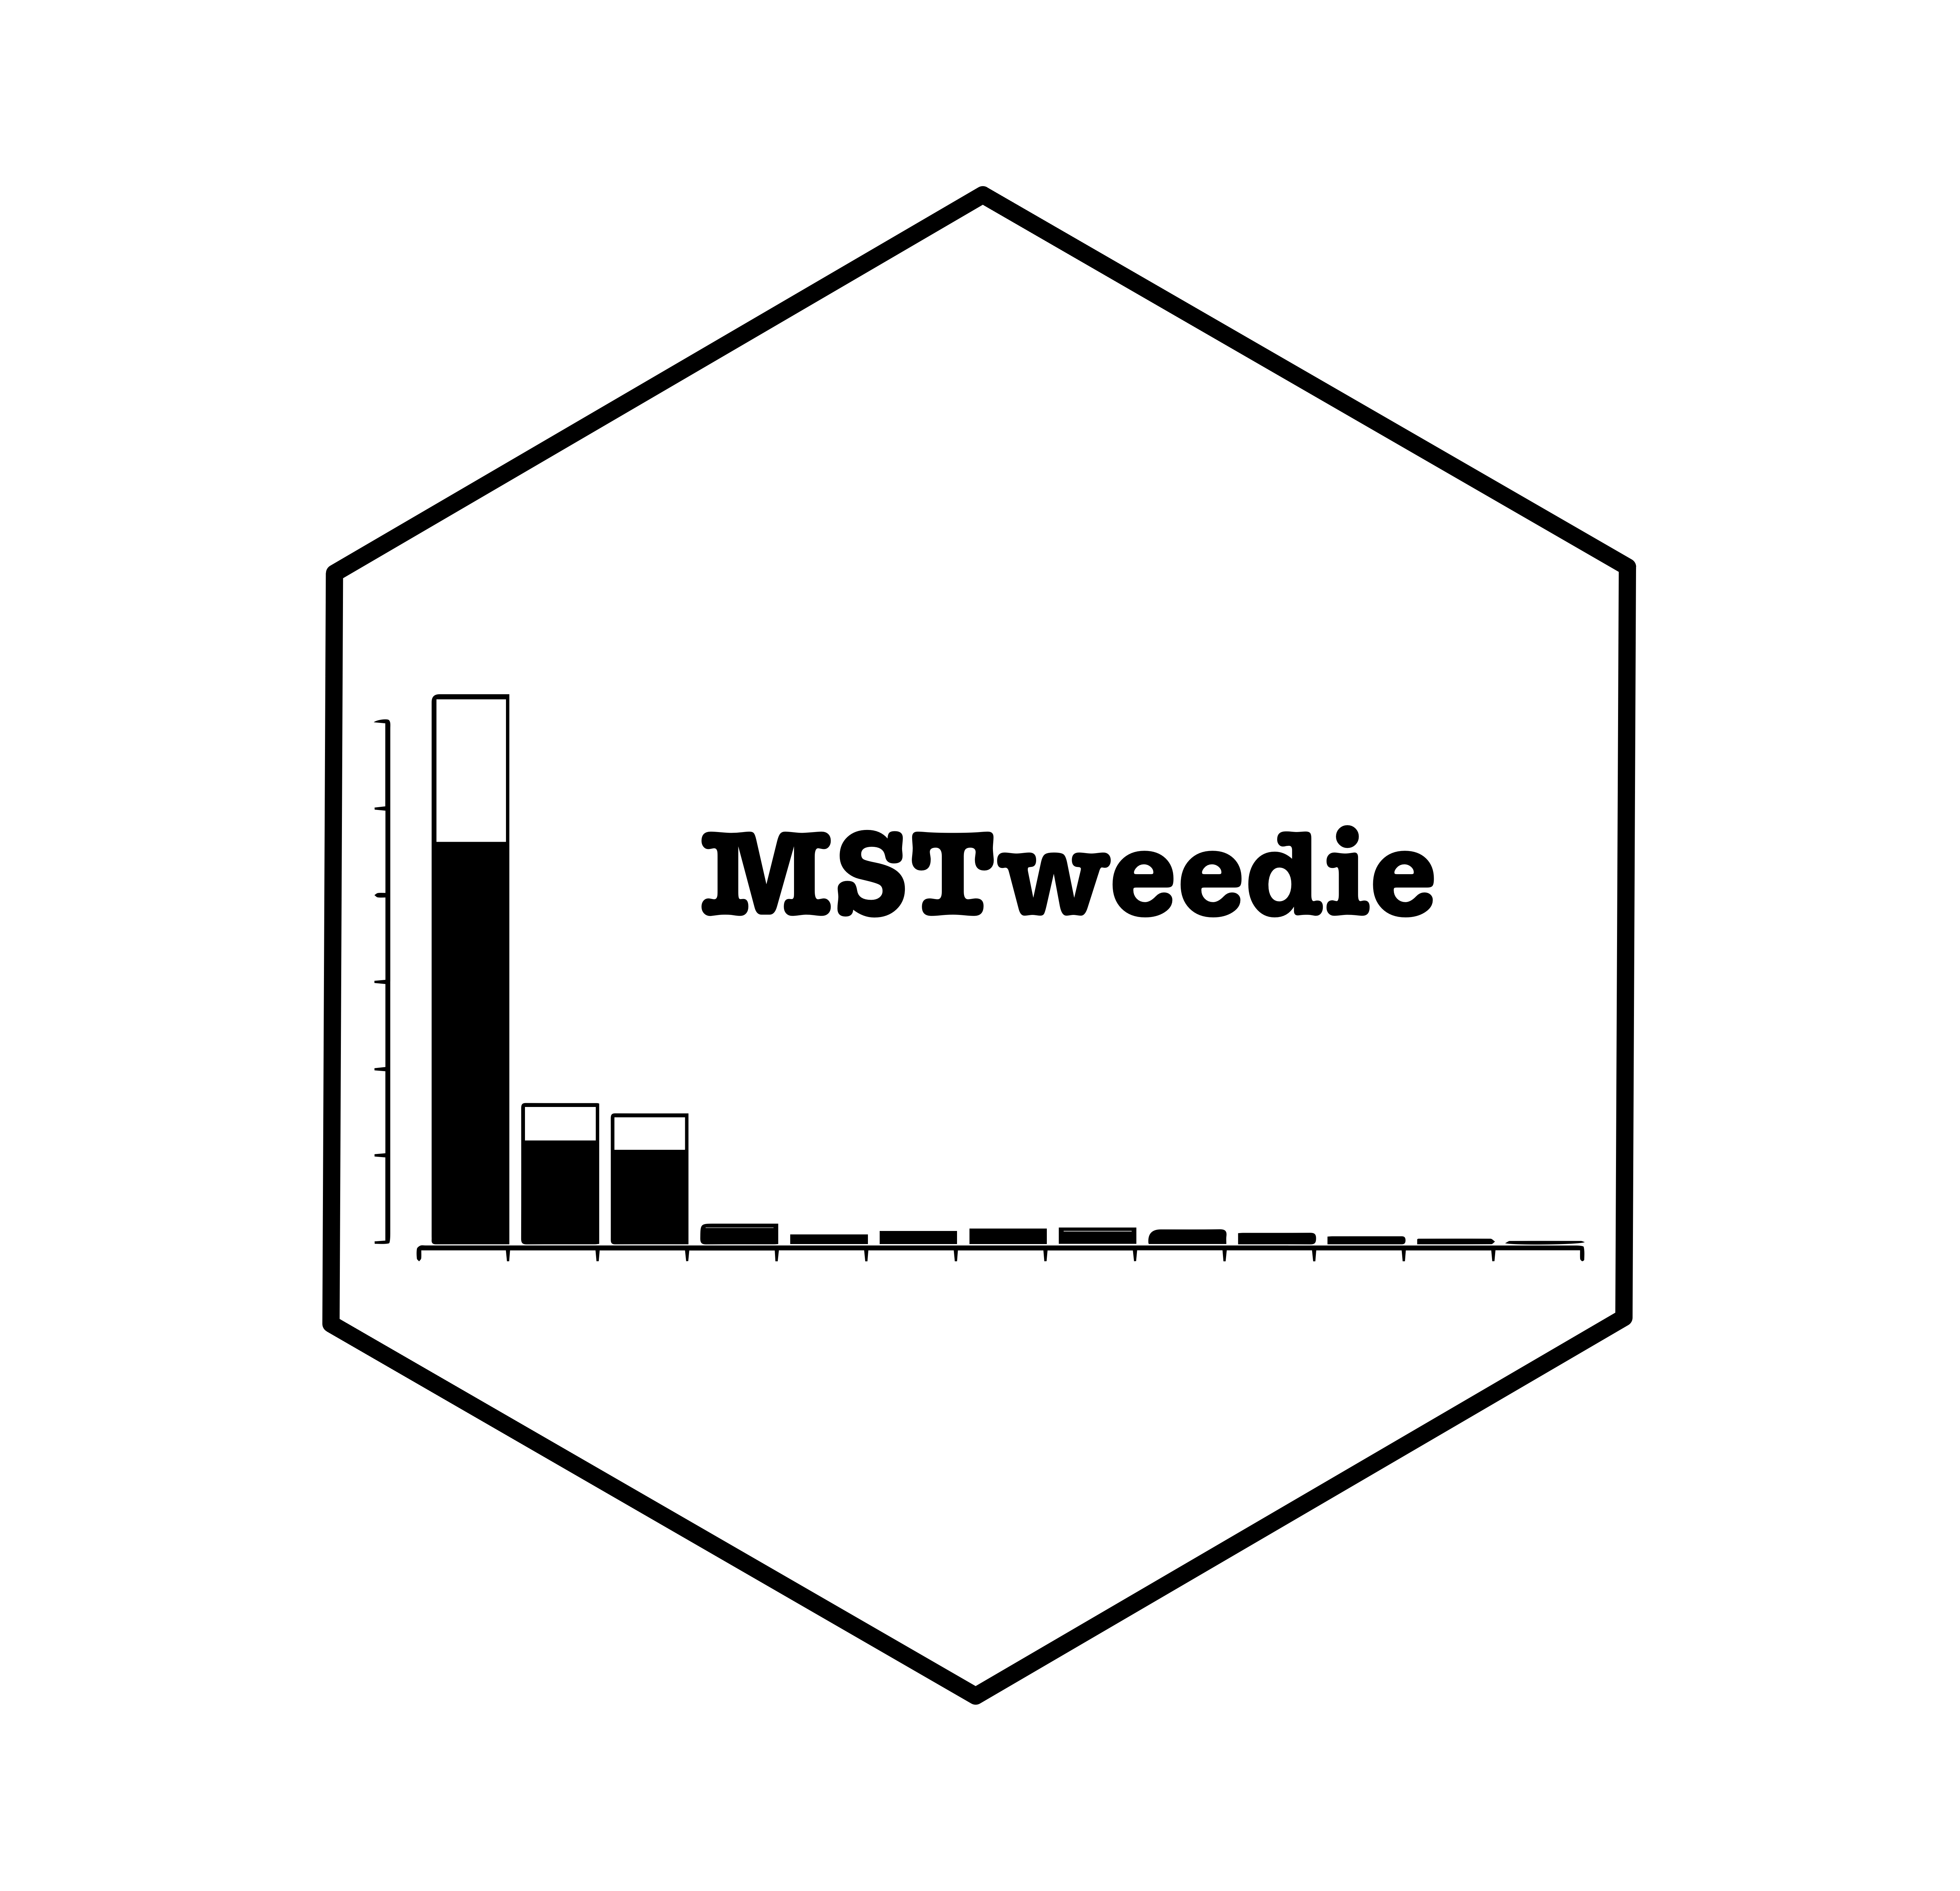 Histogram of Tweedie data